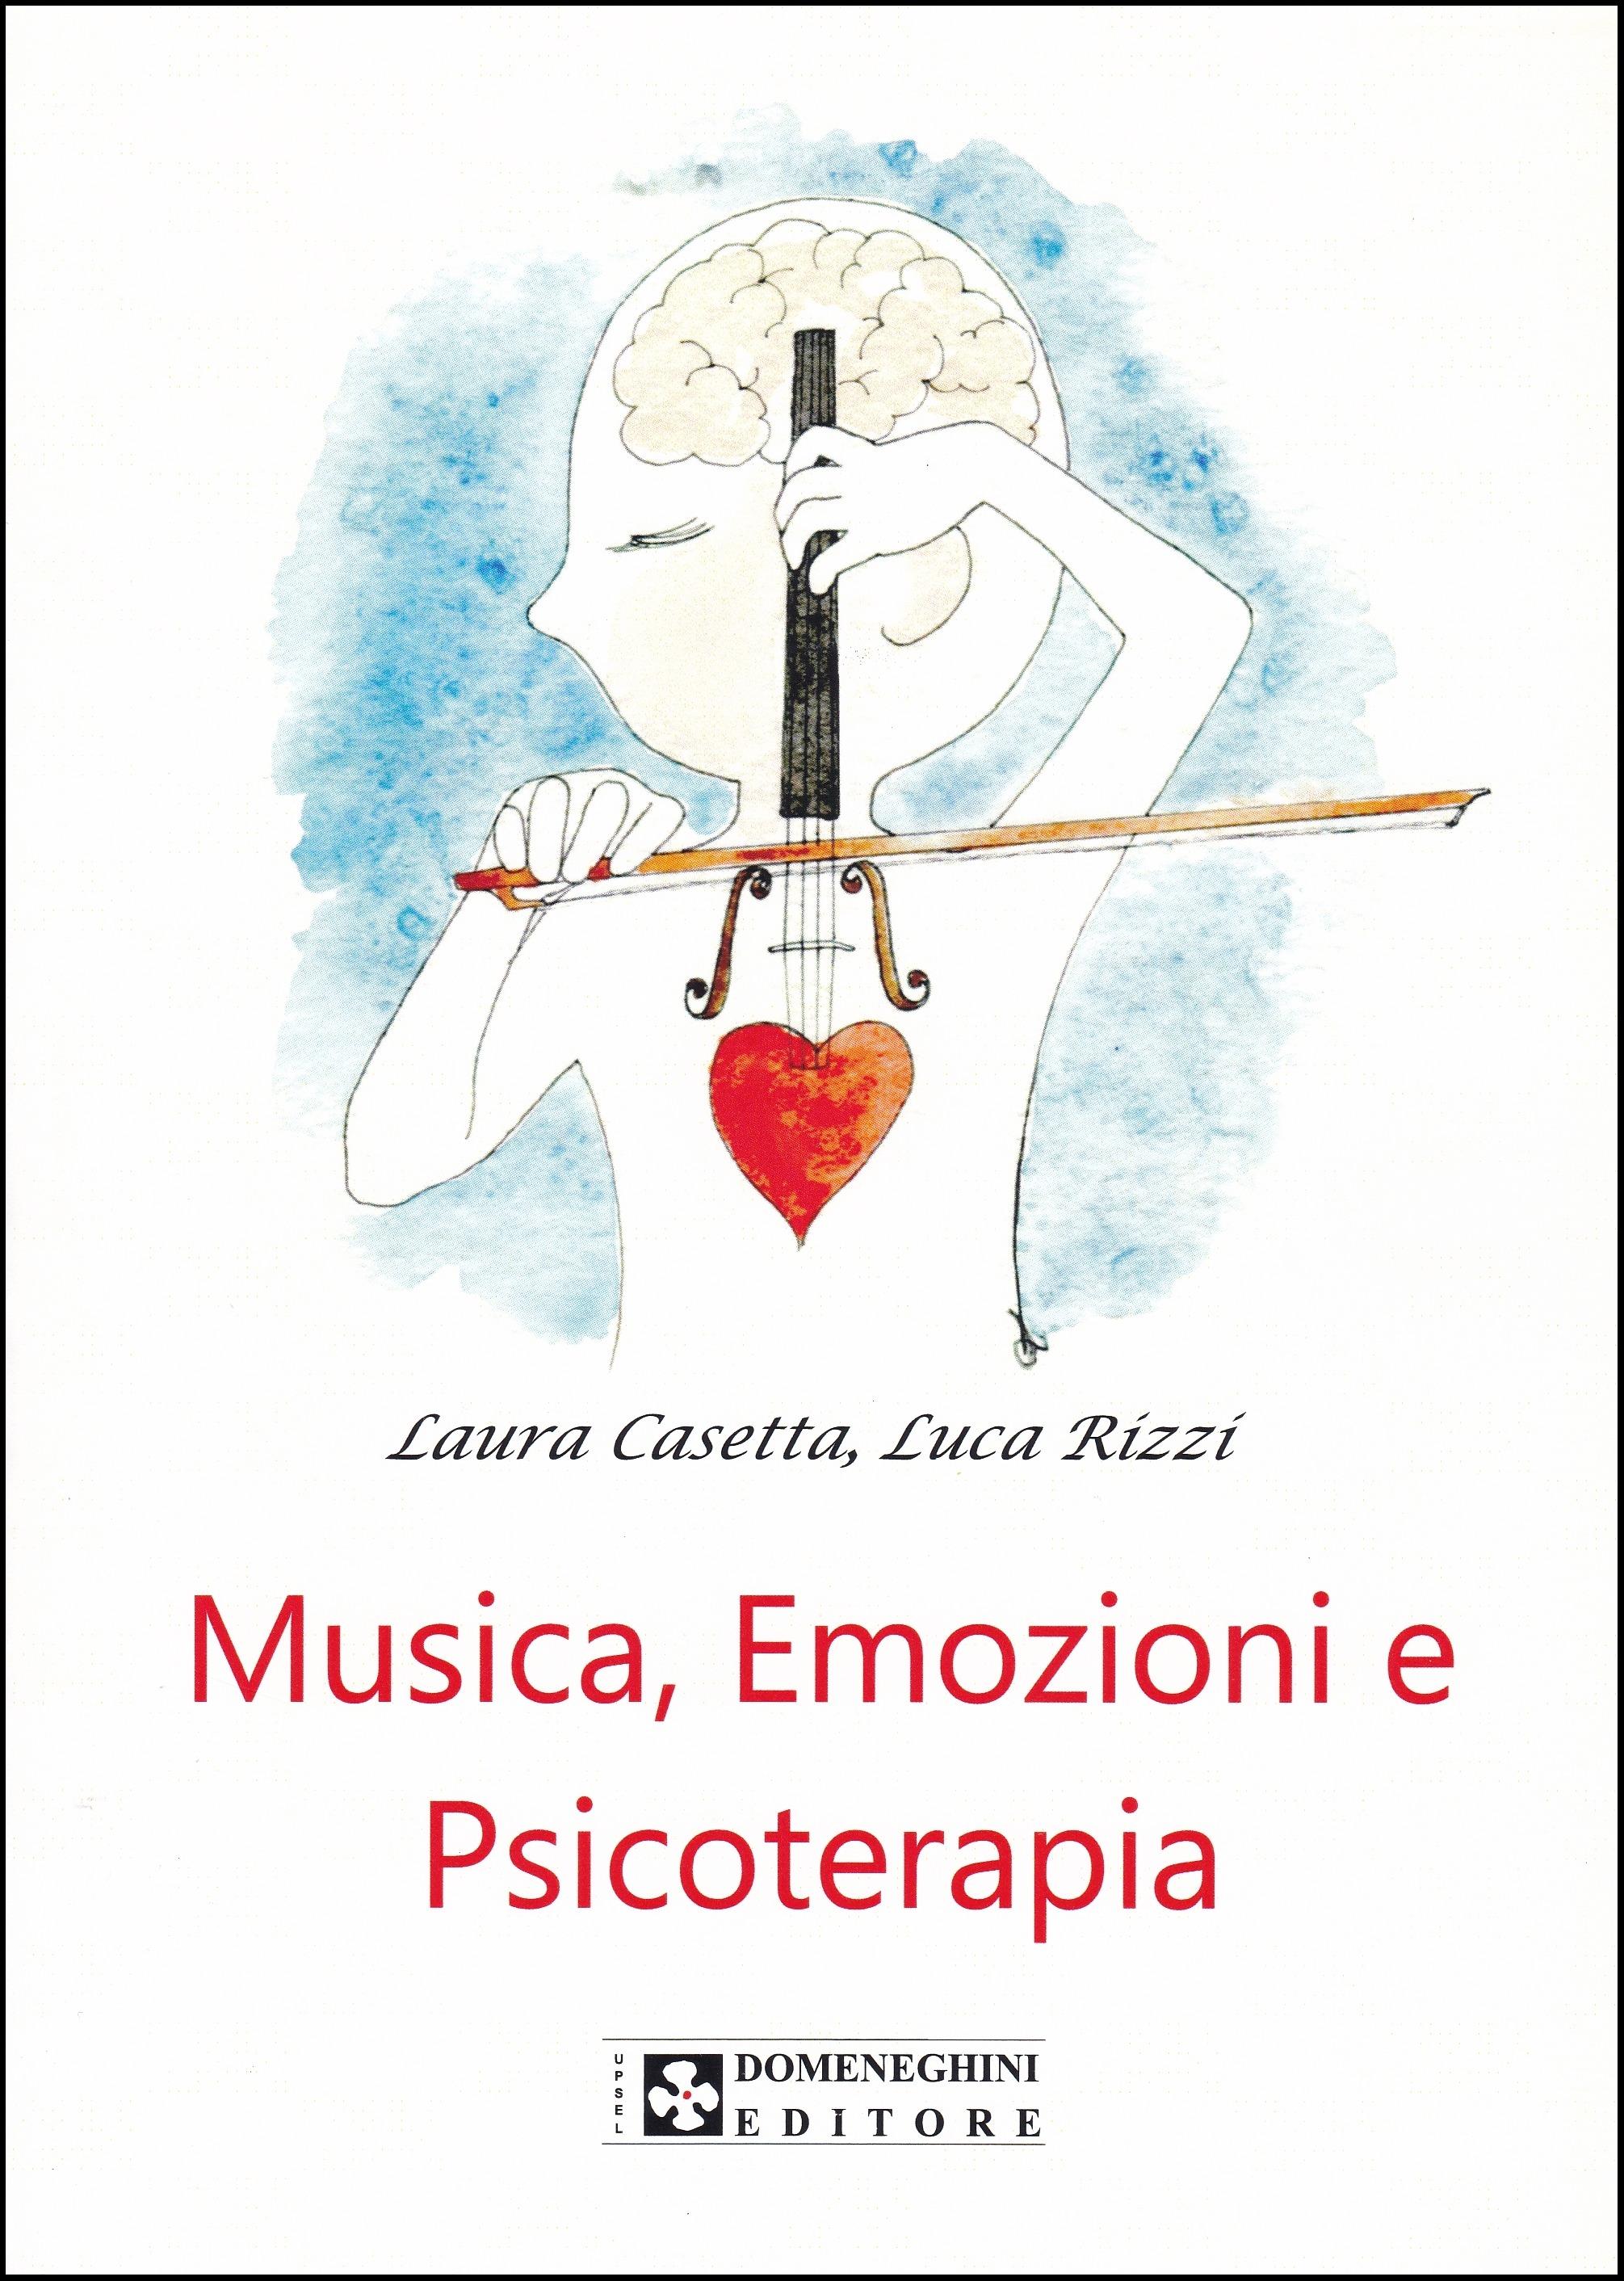 Casetta - Rizzi. Musica, Emozioni e Psicoterapia